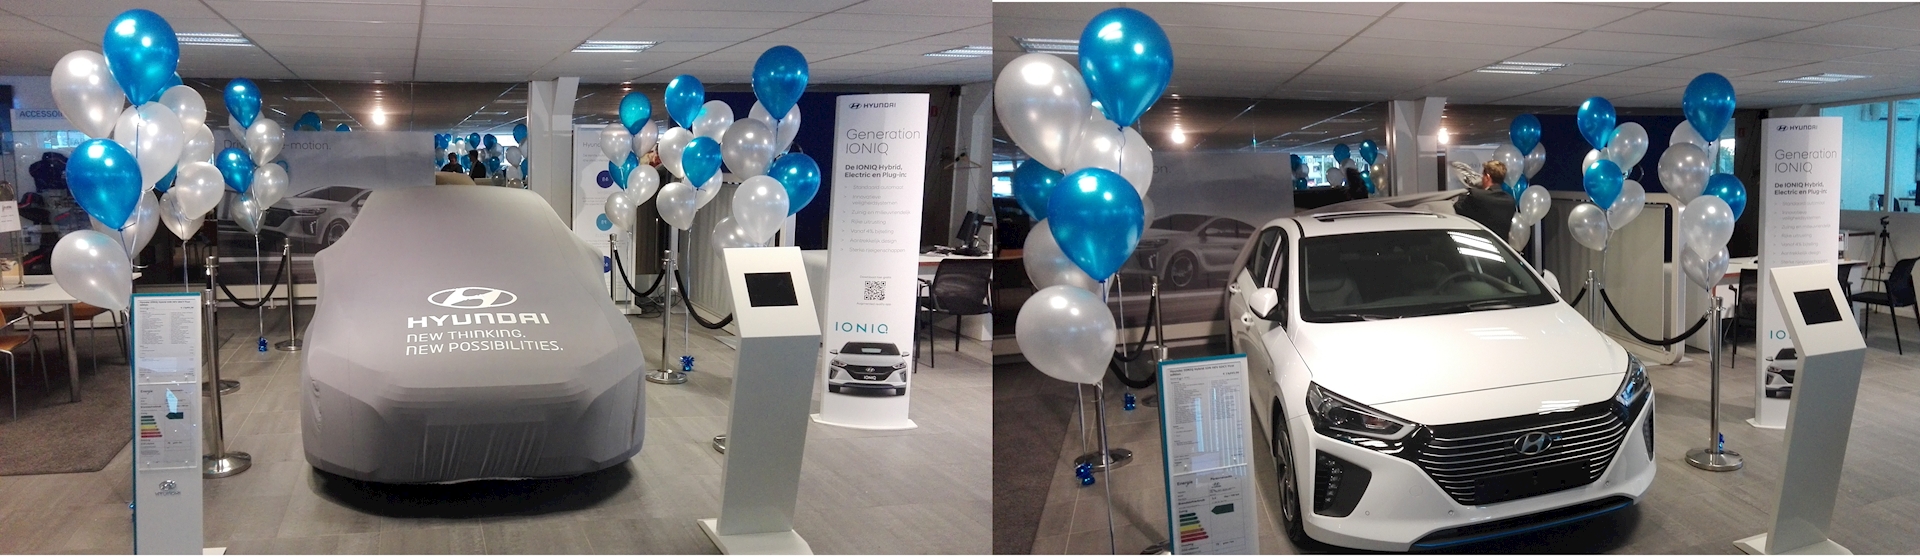 Heerlijk filosoof maaien helium ballon decoraties onthulling nieuwe auto in showroom |  Ballonnenpartners